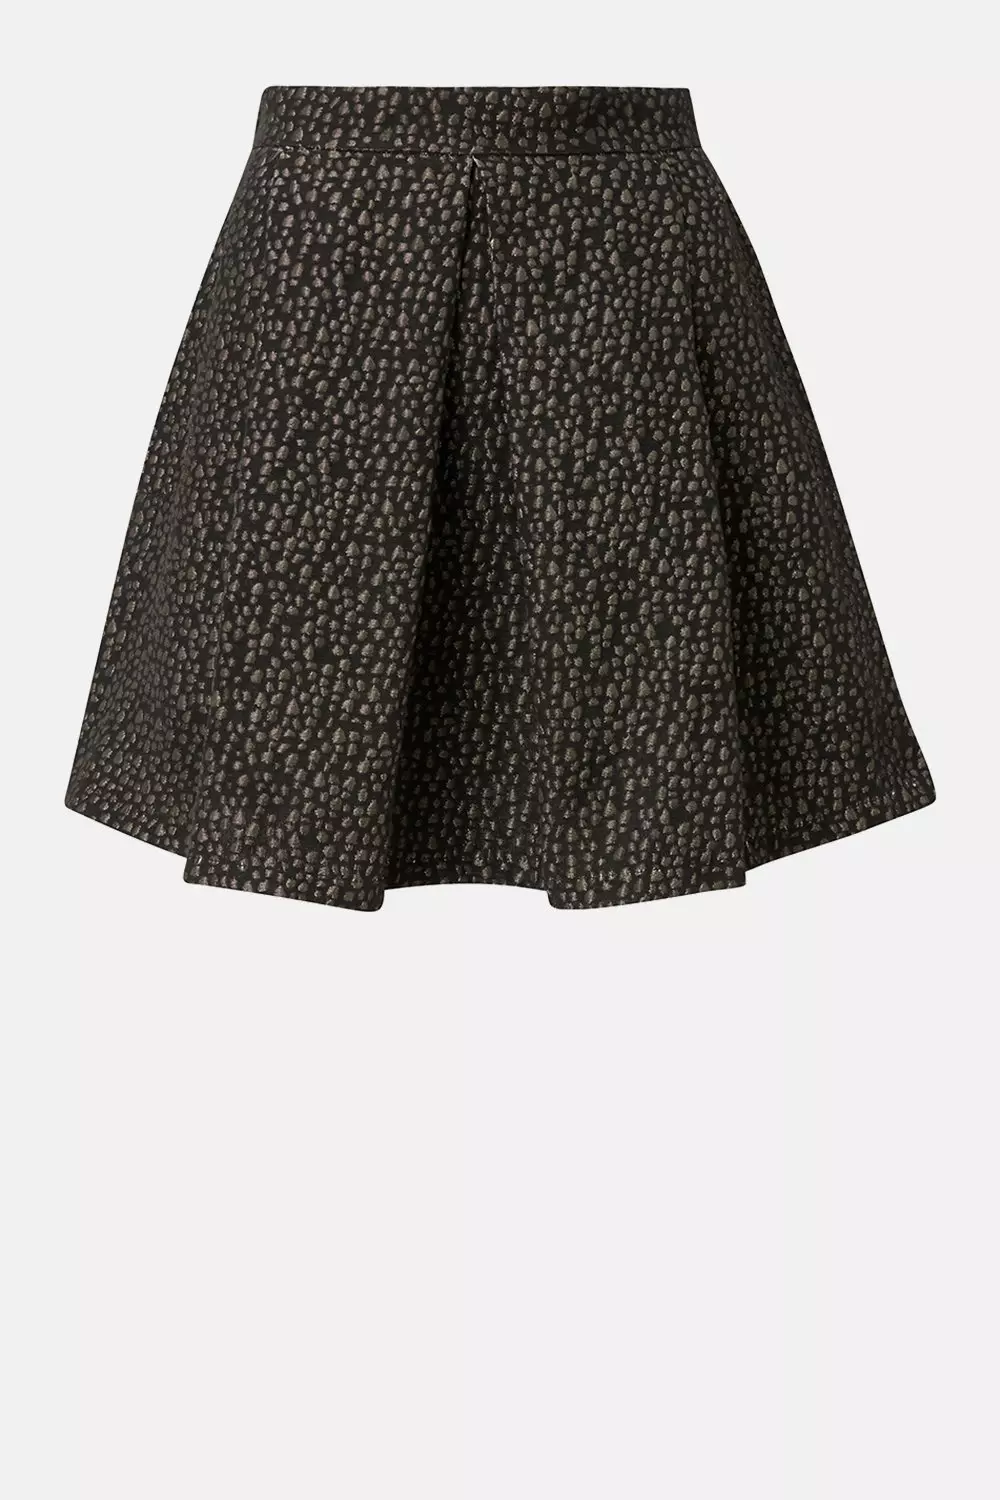 Short Black & Gold Jacquard Skirt